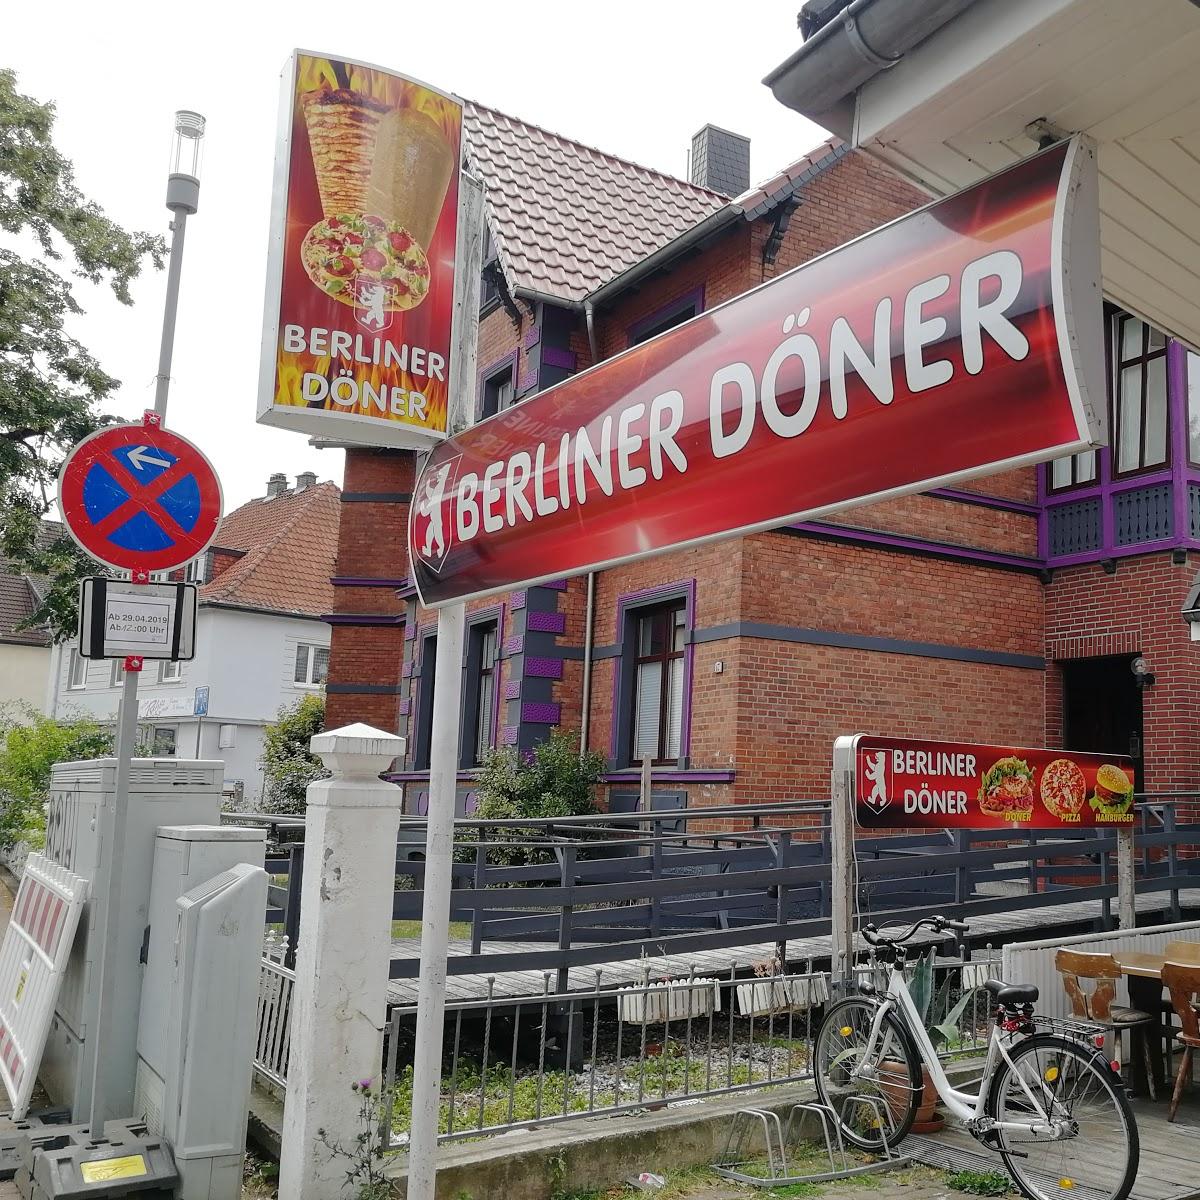 Restaurant "Berliner Döner" in  Nenndorf